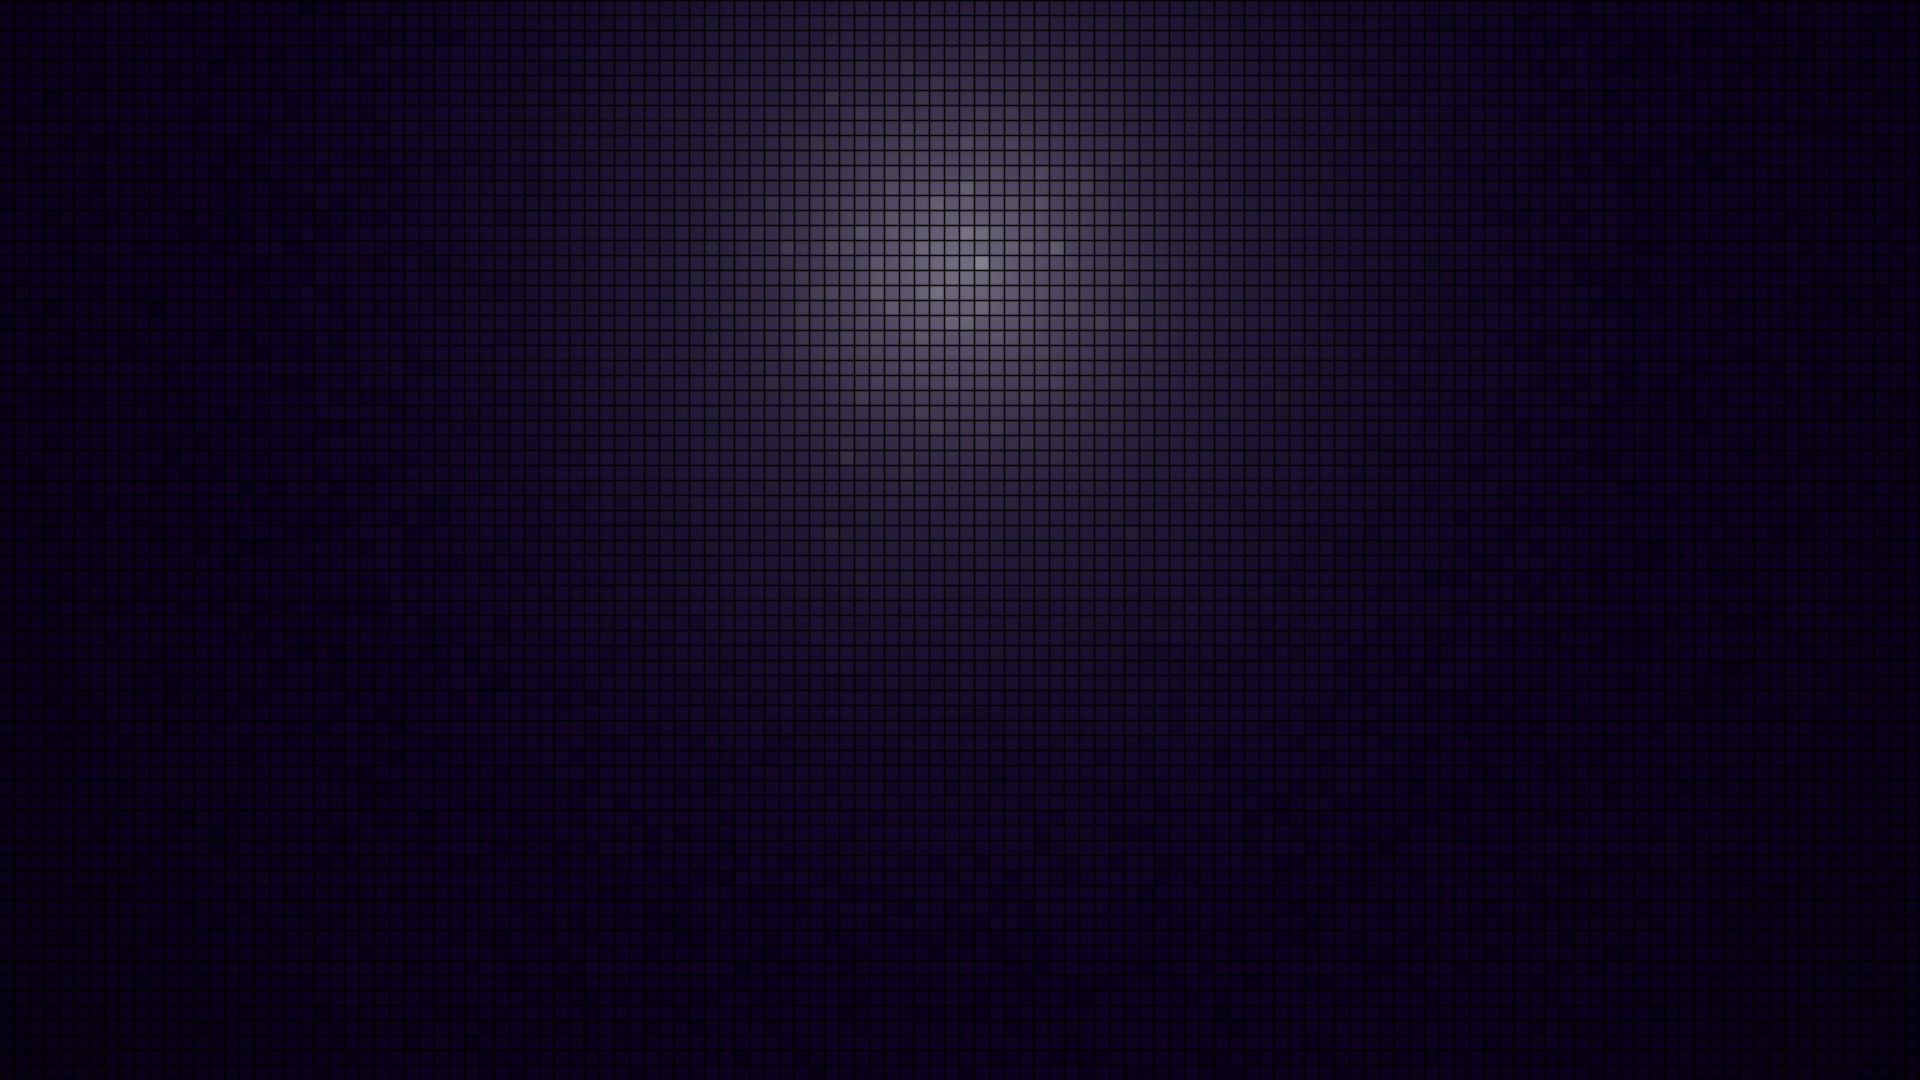 Purple Tiles Wallpaper 6029 1920x1080 - uMad.com